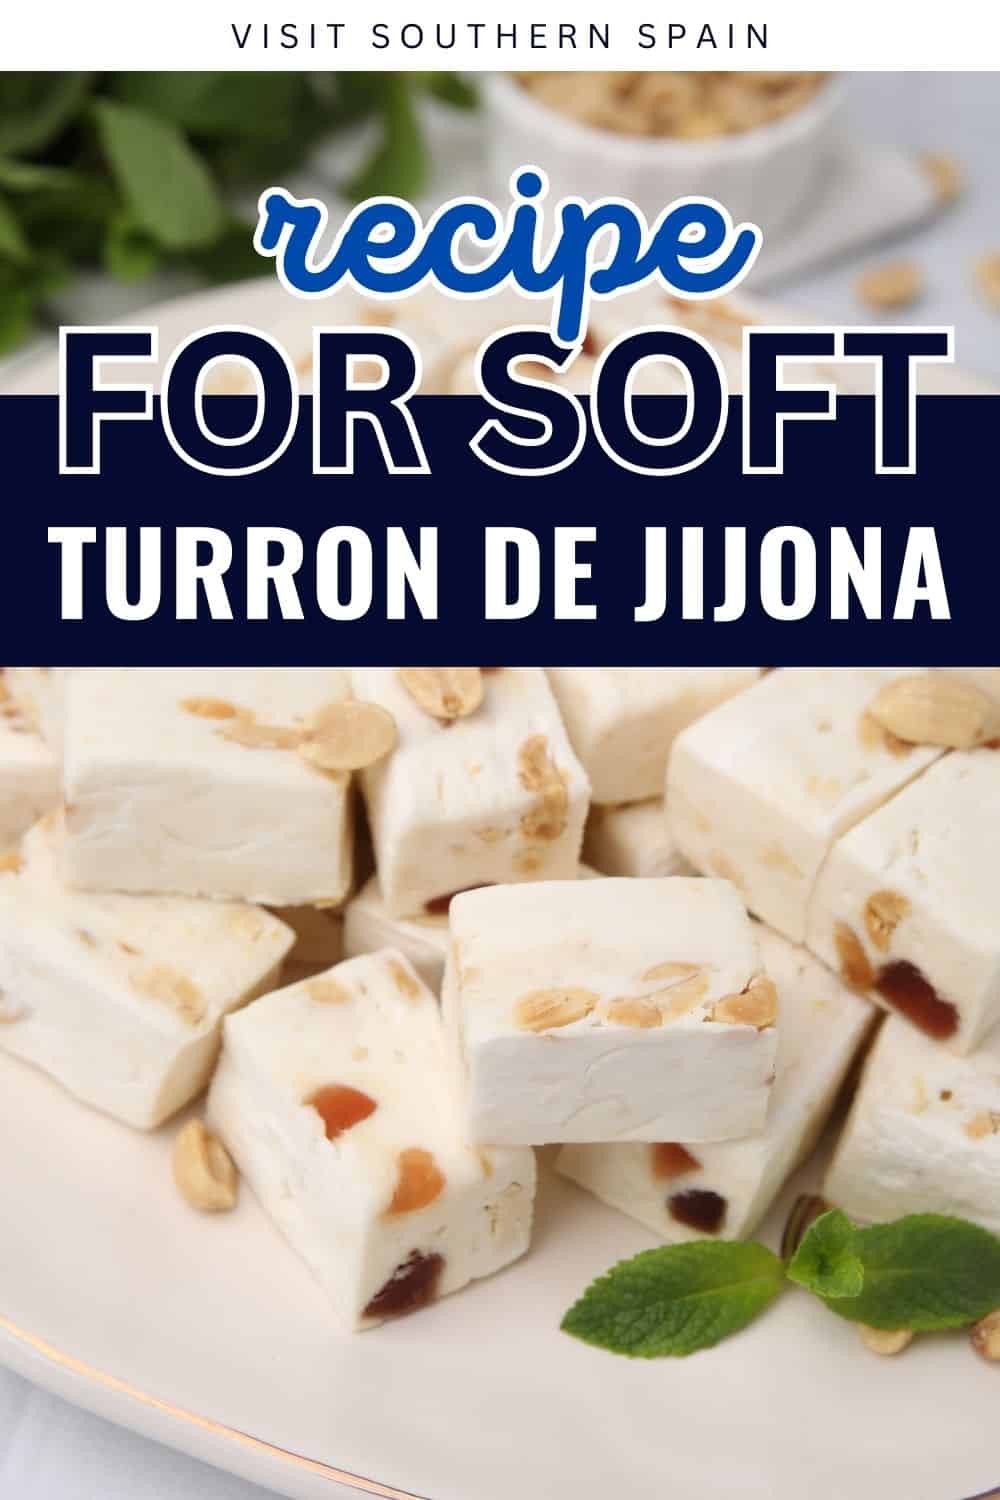 Soft Turron de Jijona Recipe - Visit Southern Spain